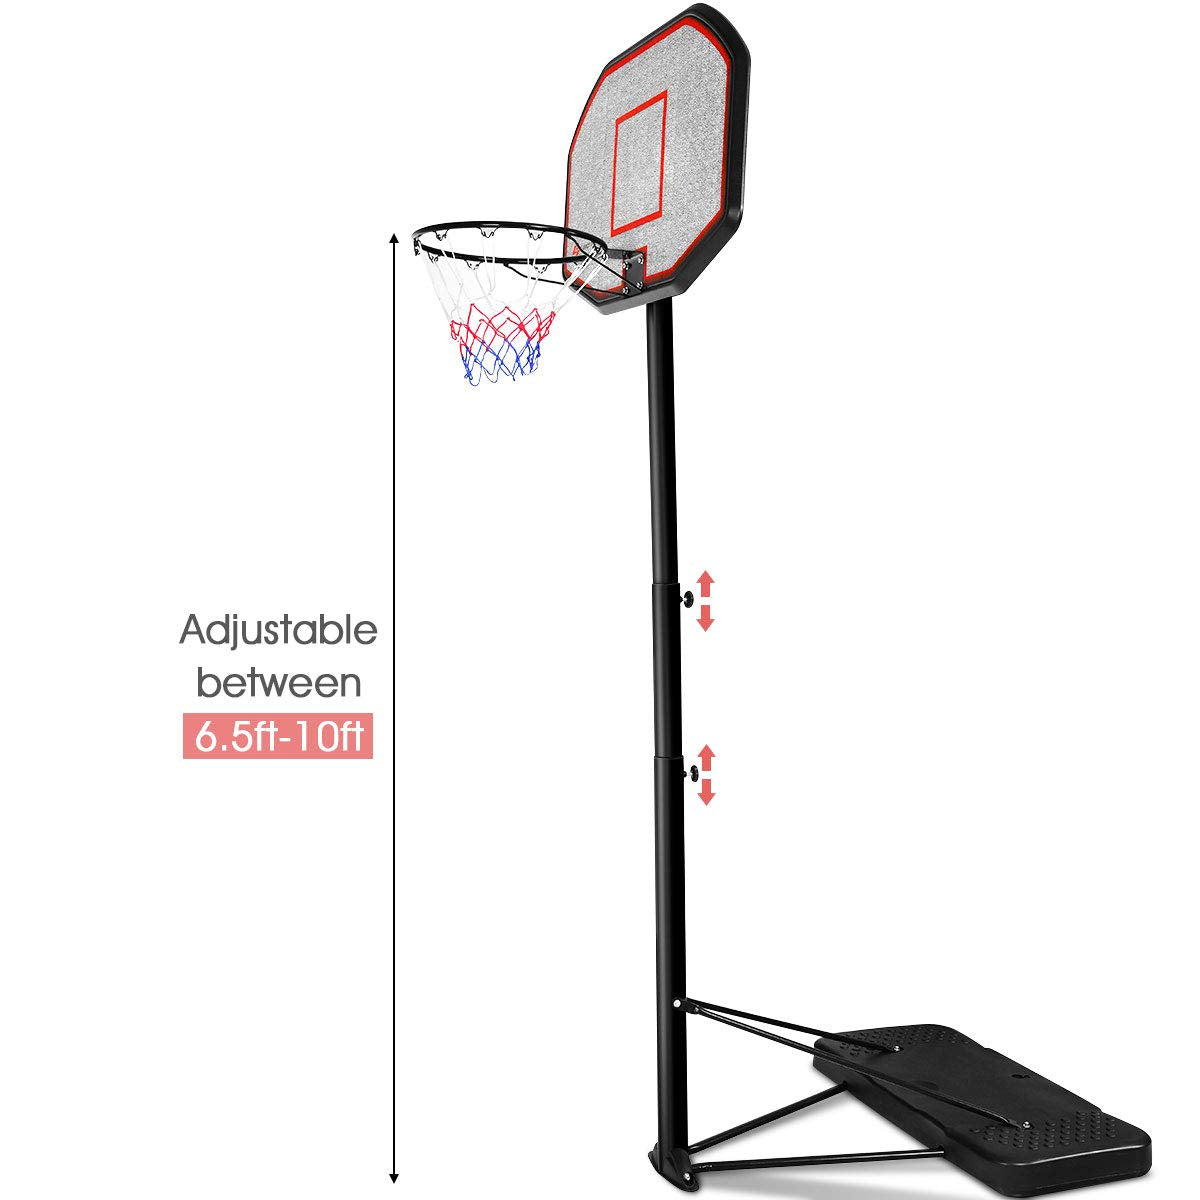 Giantex Portable Basketball Hoop 10 Ft Indoor Outdoor Adjustable Height 6.5'-10'